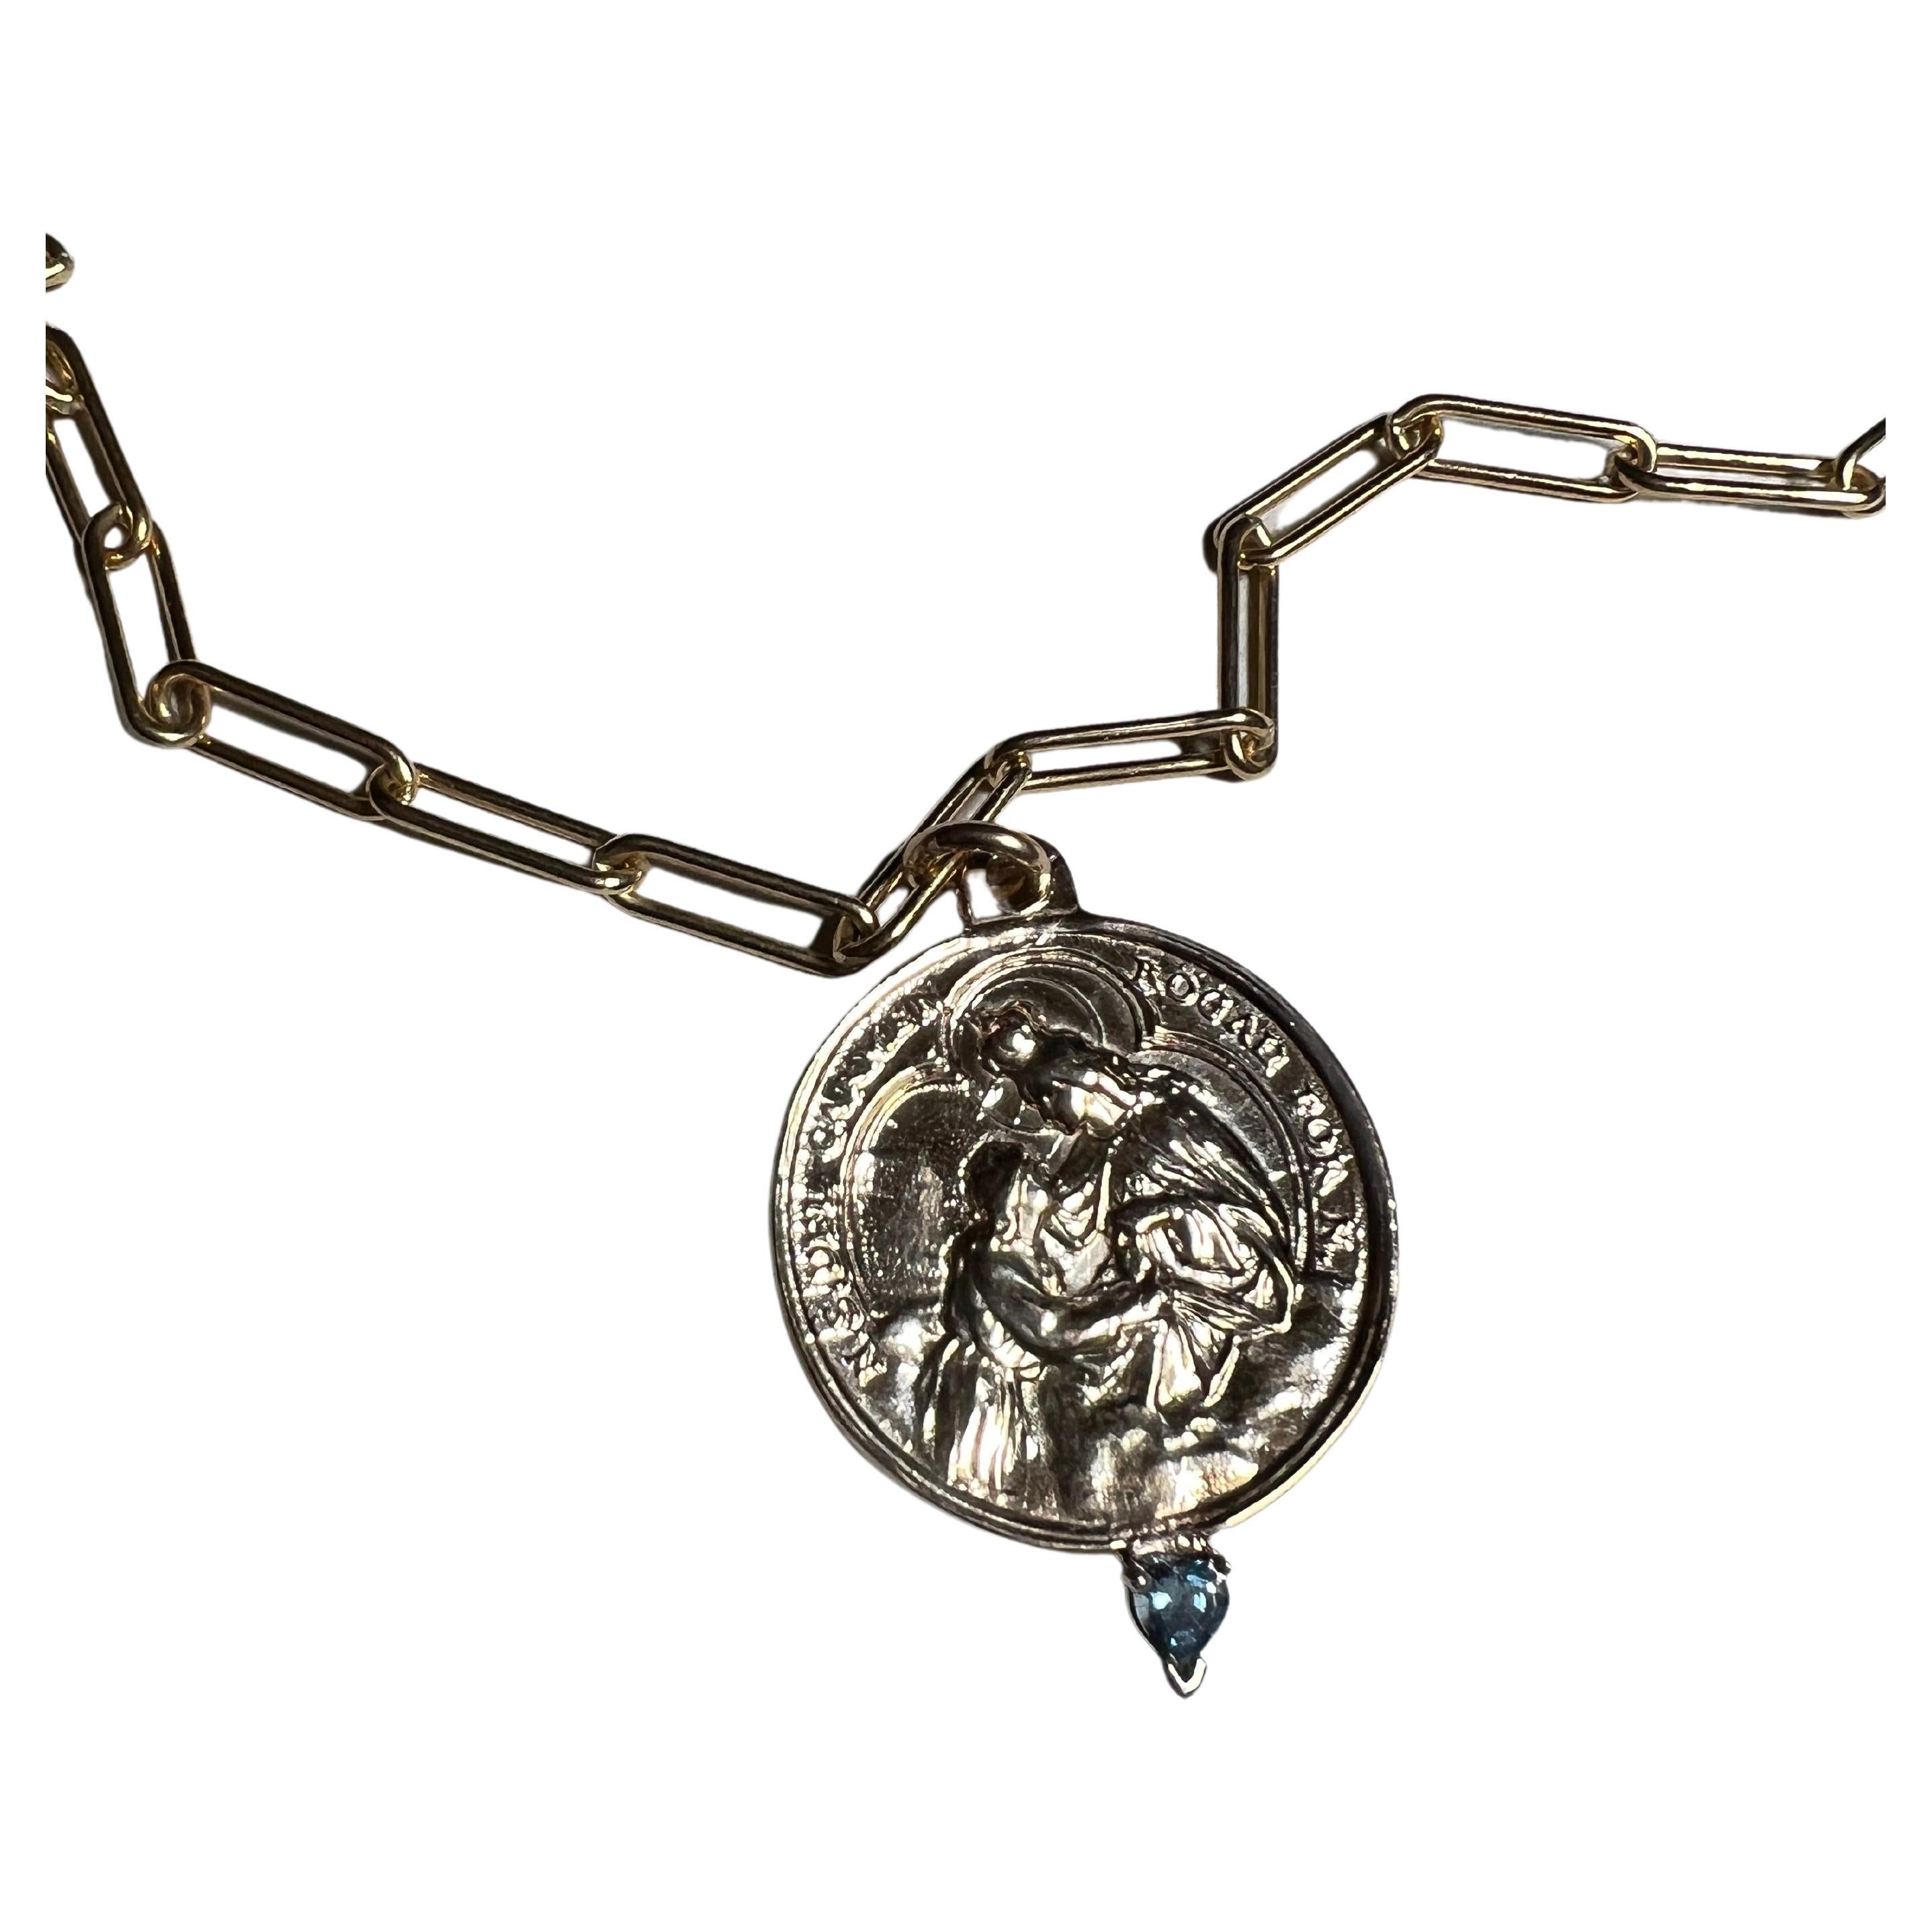 Aquamarin Herz auf einer Medaille mit Jungfrau del Carmen auf Kette Halskette, die Gold gefüllt ist gesetzt

Länge: 28